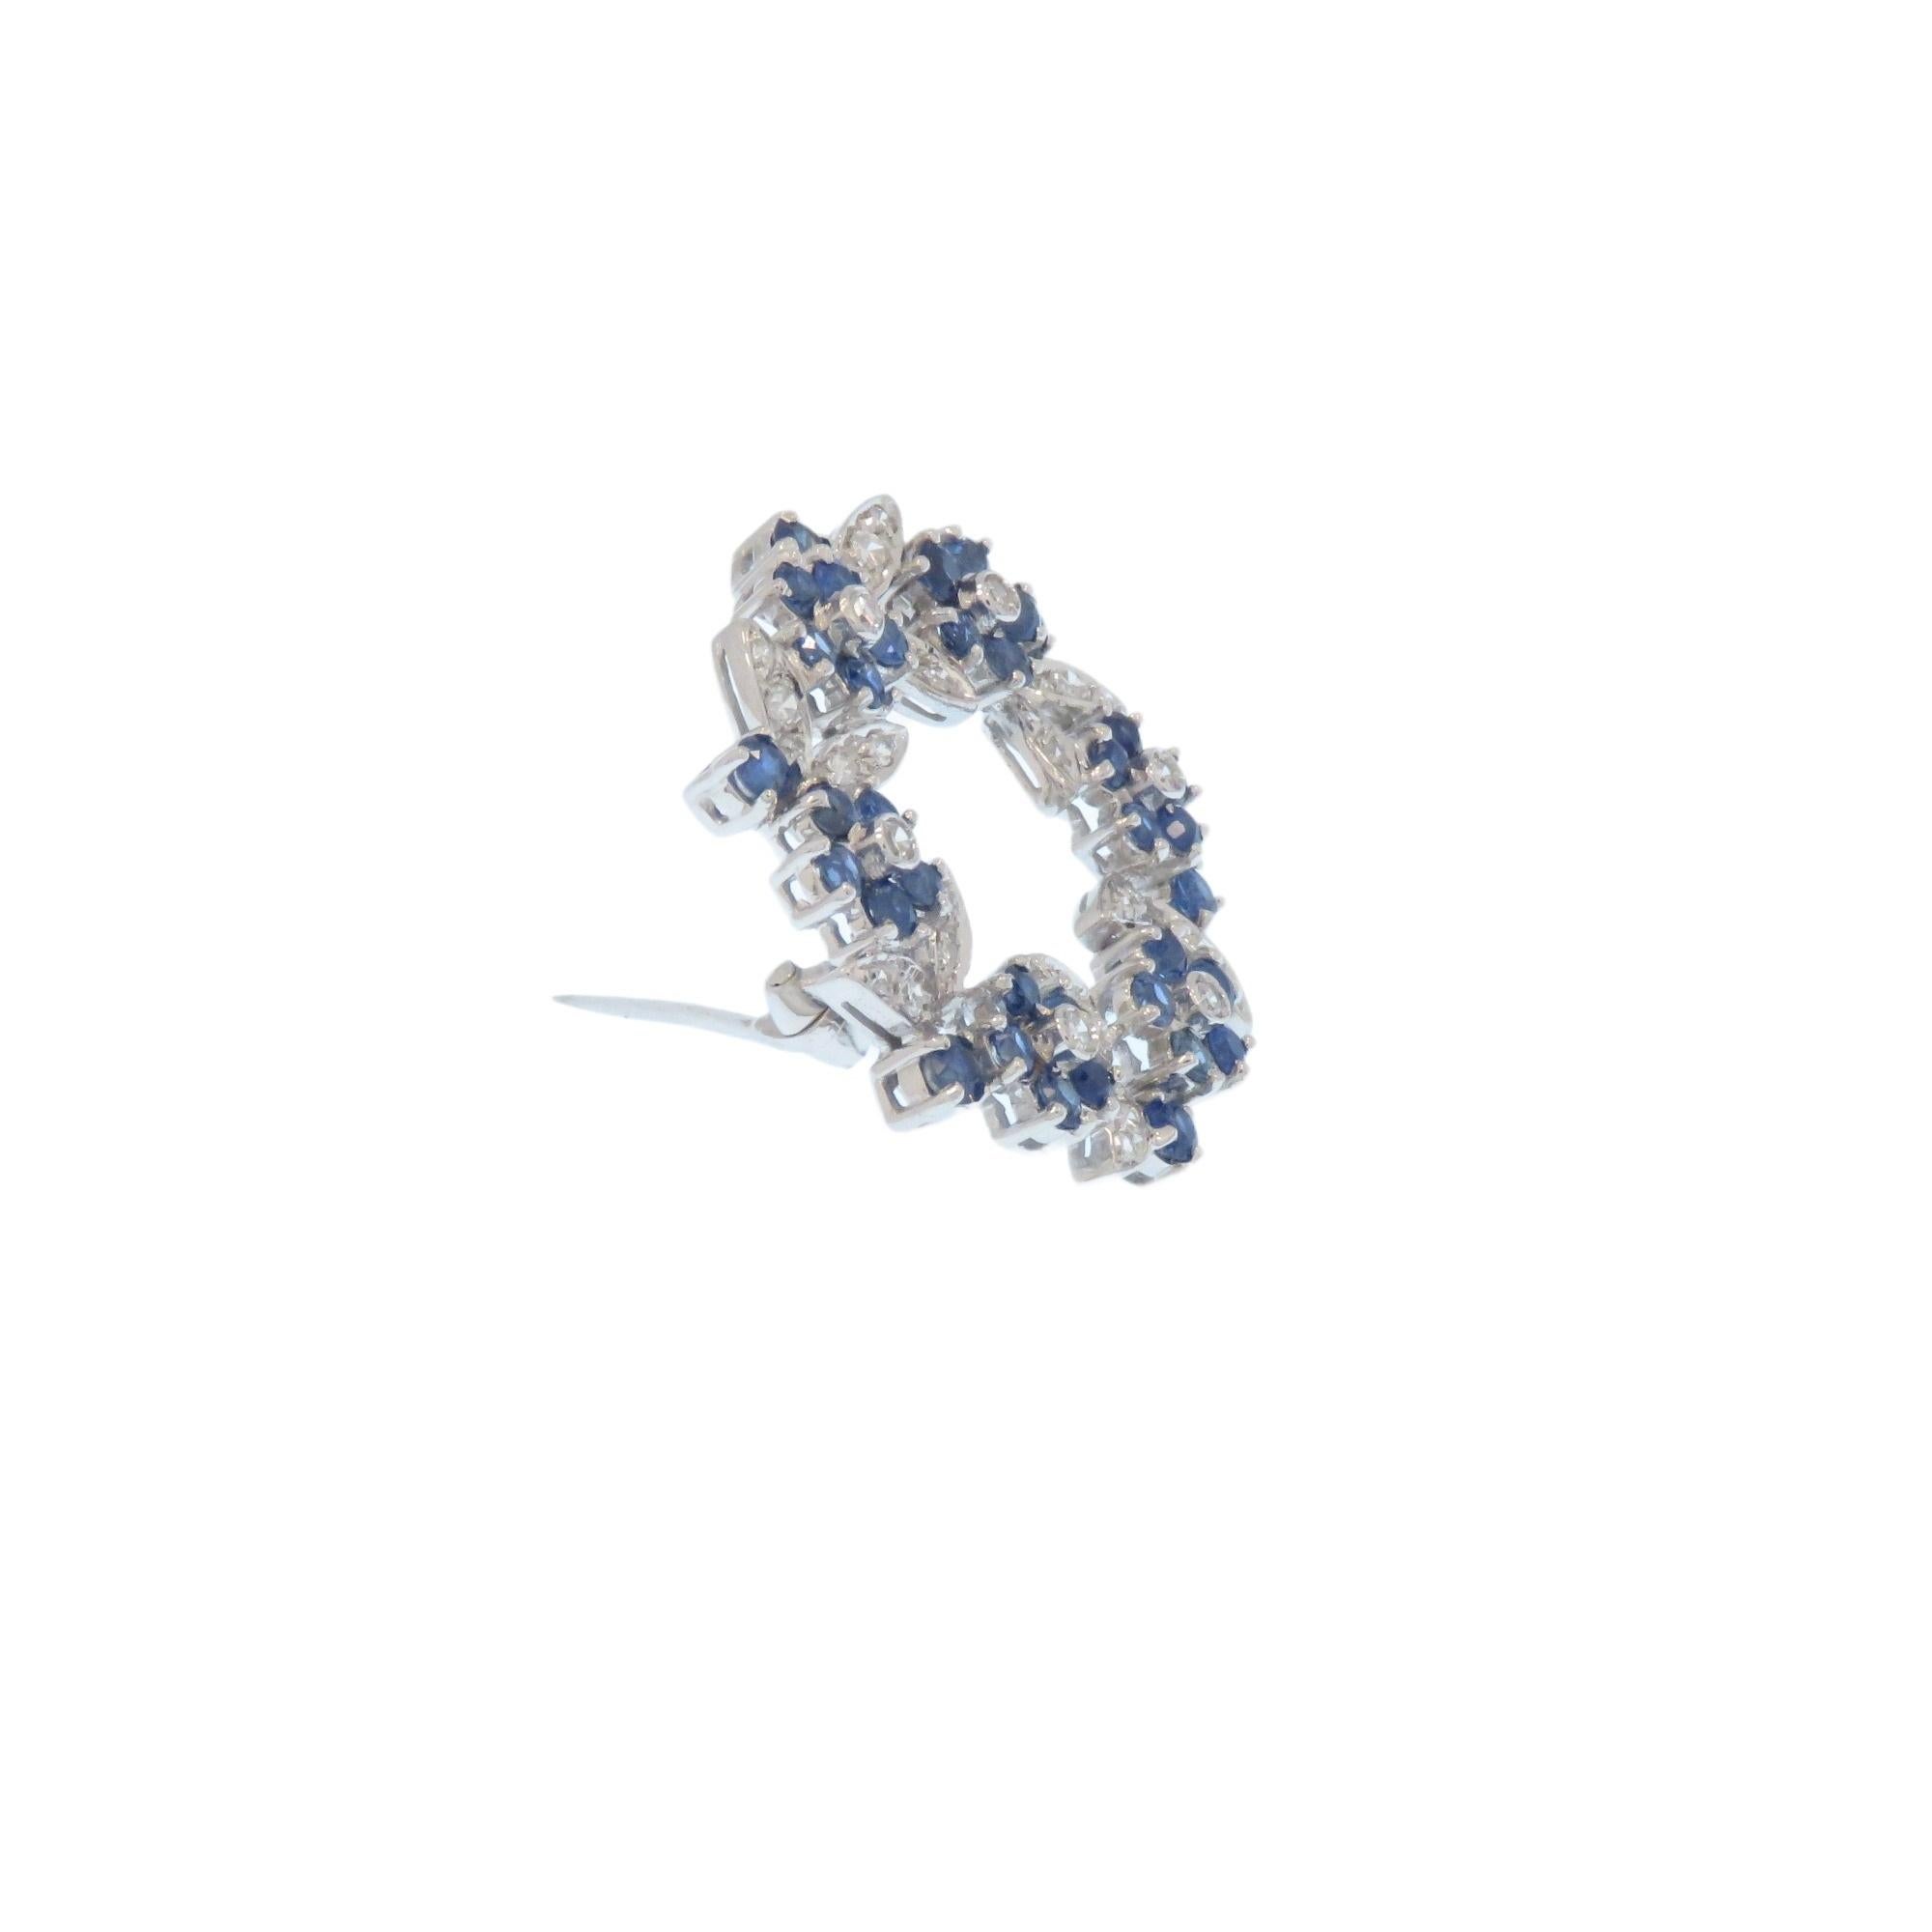 Conçu avec des grappes de fleurs et de feuilles alternant dans une forme circulaire. Réalisée en 1960 en or blanc 18 carats avec diamants et saphirs bleus.
36 diamants taillés en brillant d'environ 0,70 ctw et 36 saphirs bleus taillés en brillant